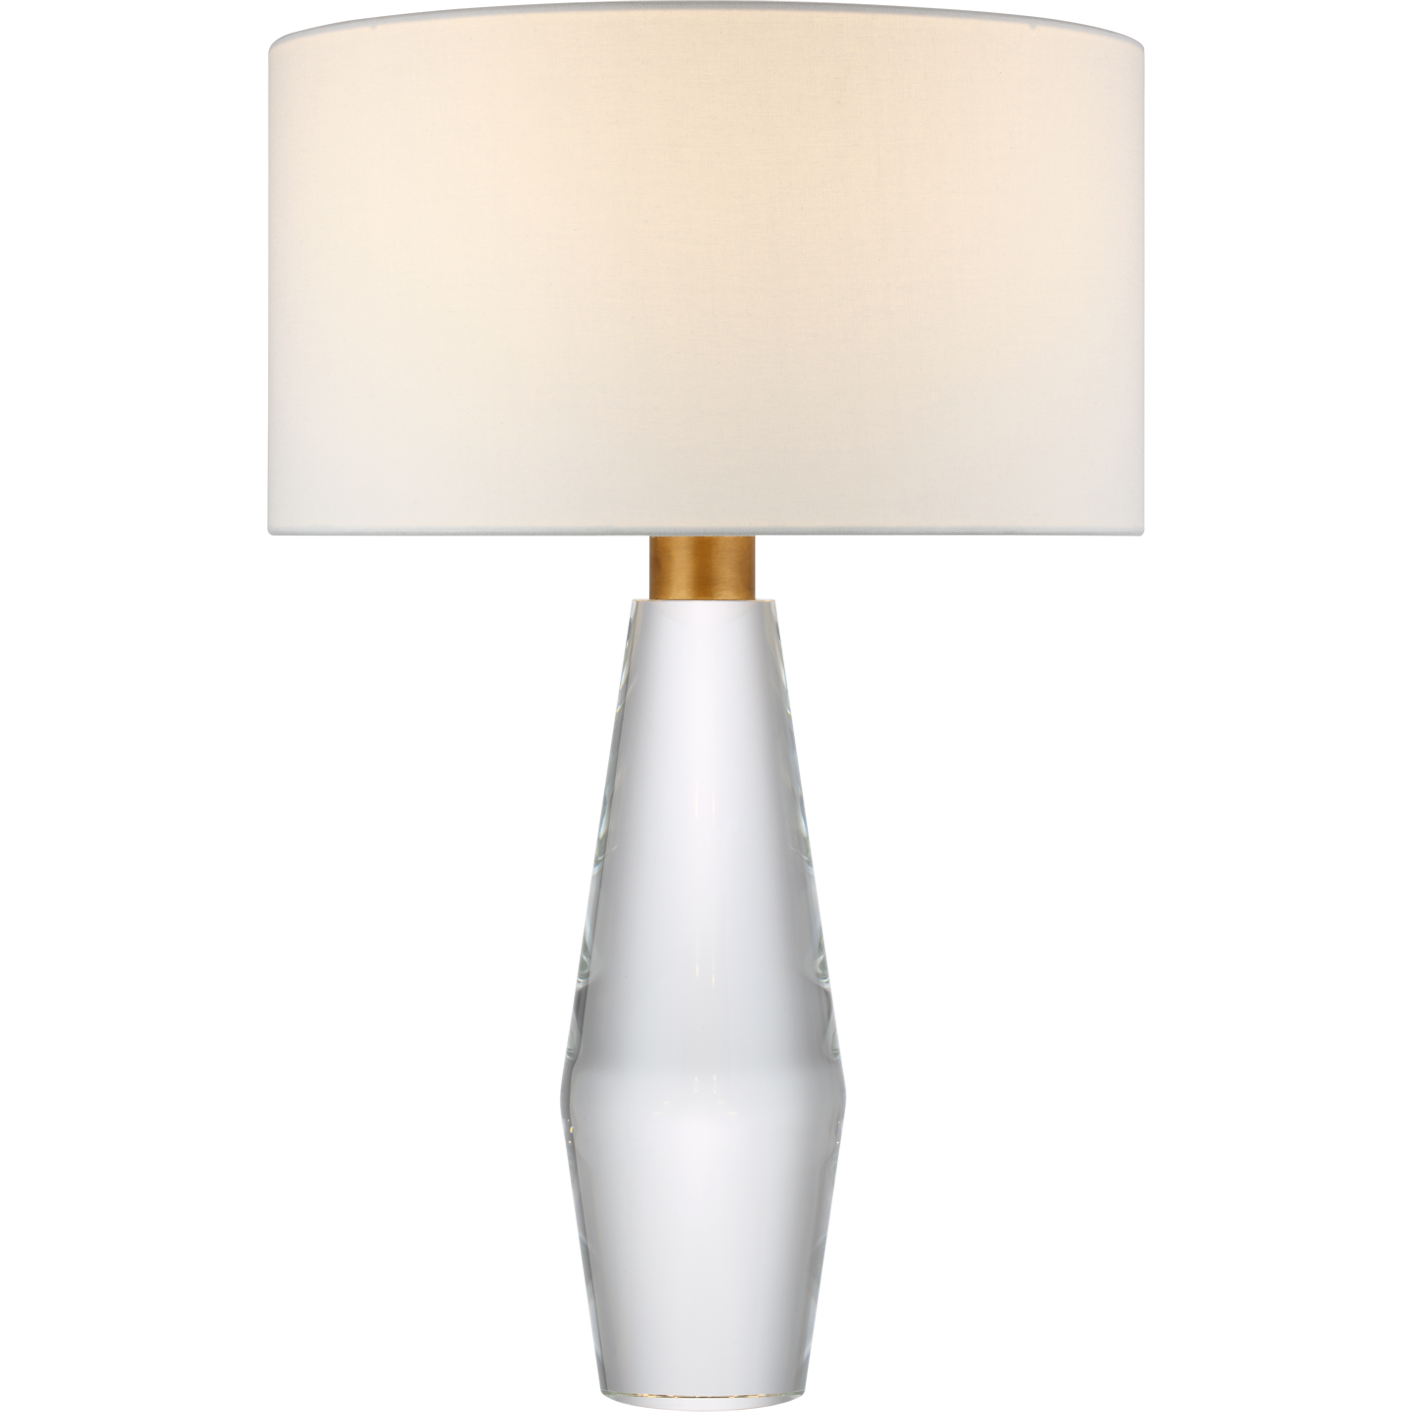 Tendmond Large Table Lamp